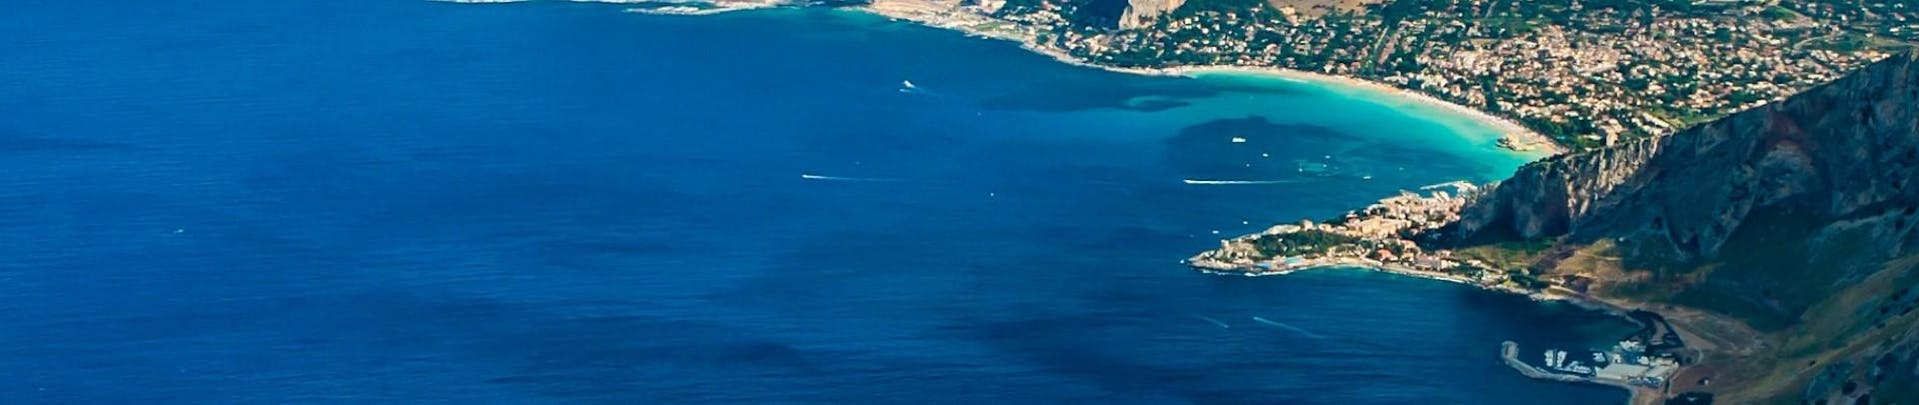 Vista della costa siciliana durante una gita in barca da Boat Tour Mondello.